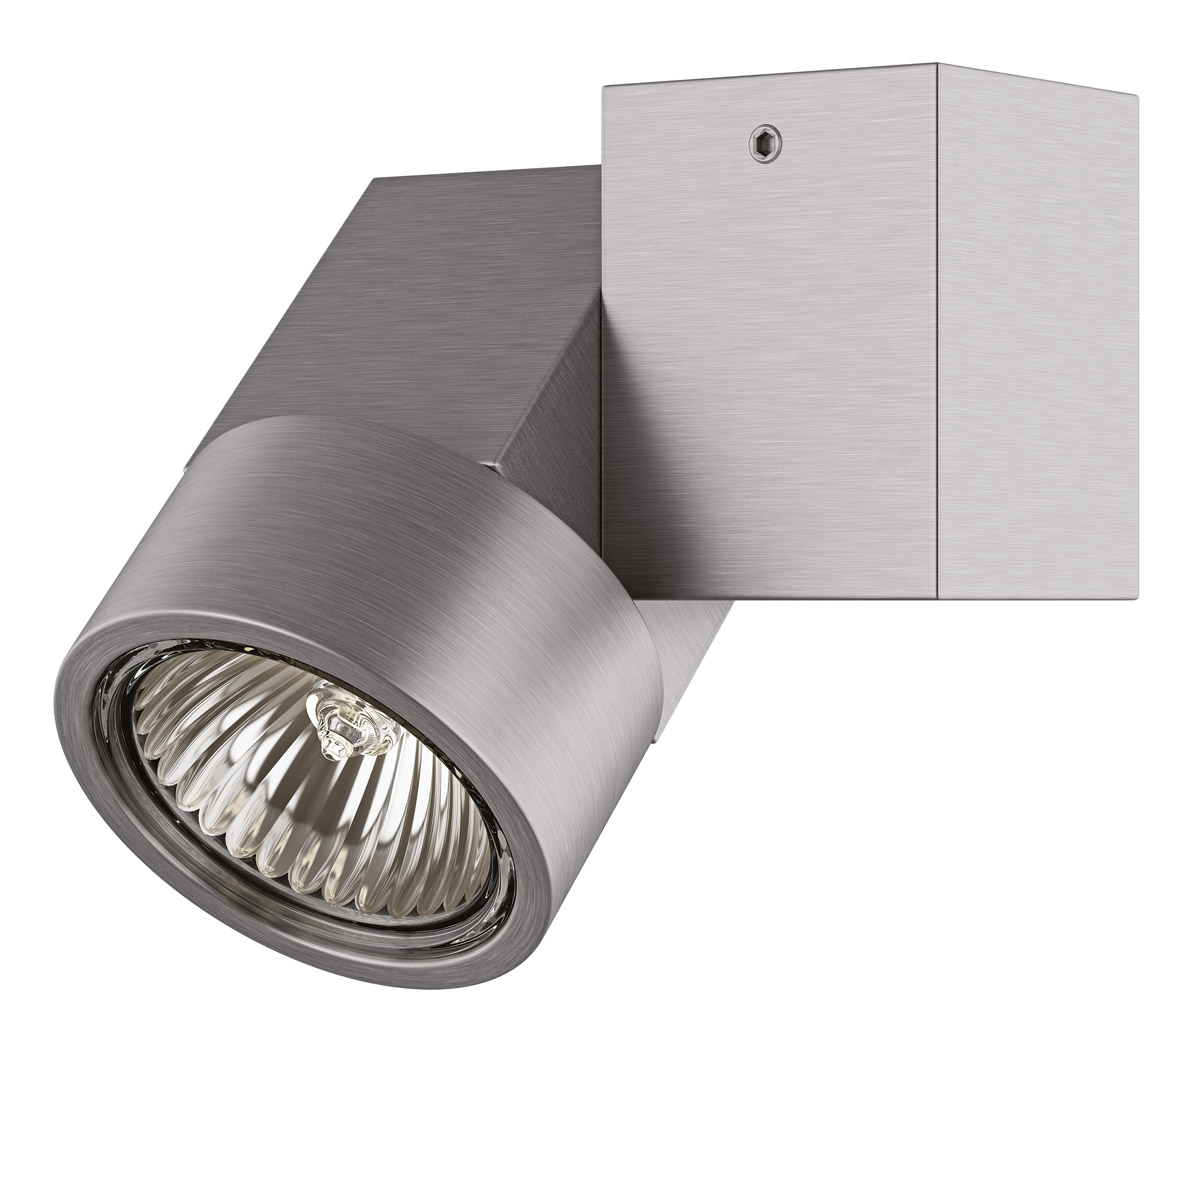 Светильник точечный накладной декоративный под заменяемые ГЛН или LED лампы Lightstar 051029 Illumo X1